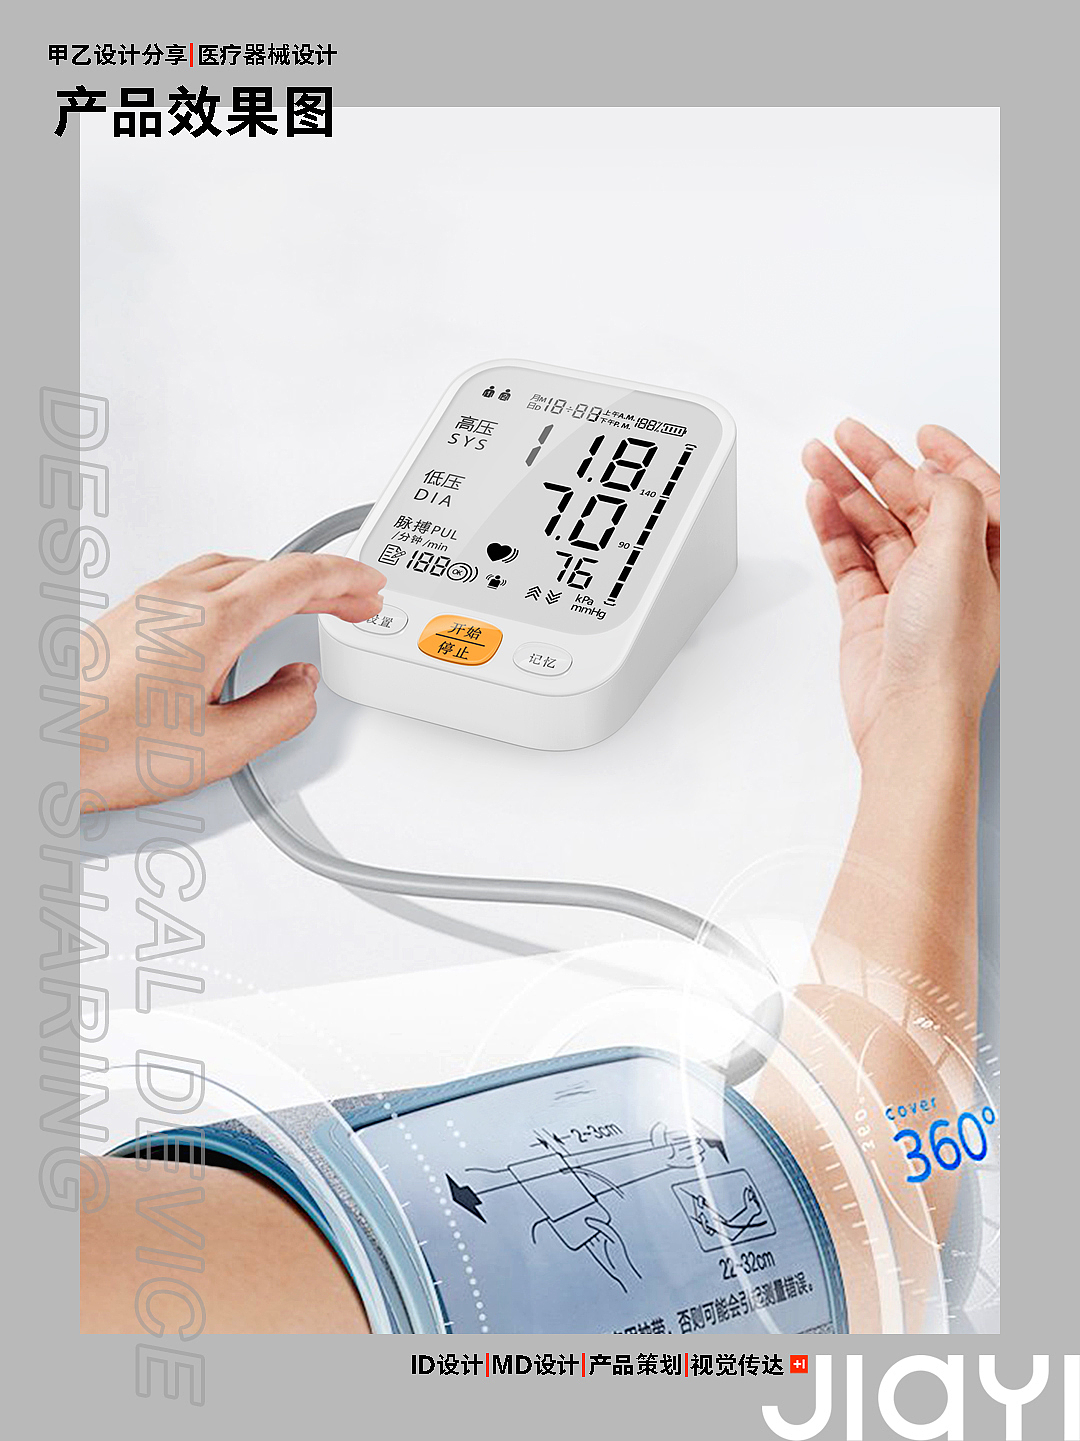 血压计，医疗产品，医疗器械，深圳甲乙设计，电子血压计，